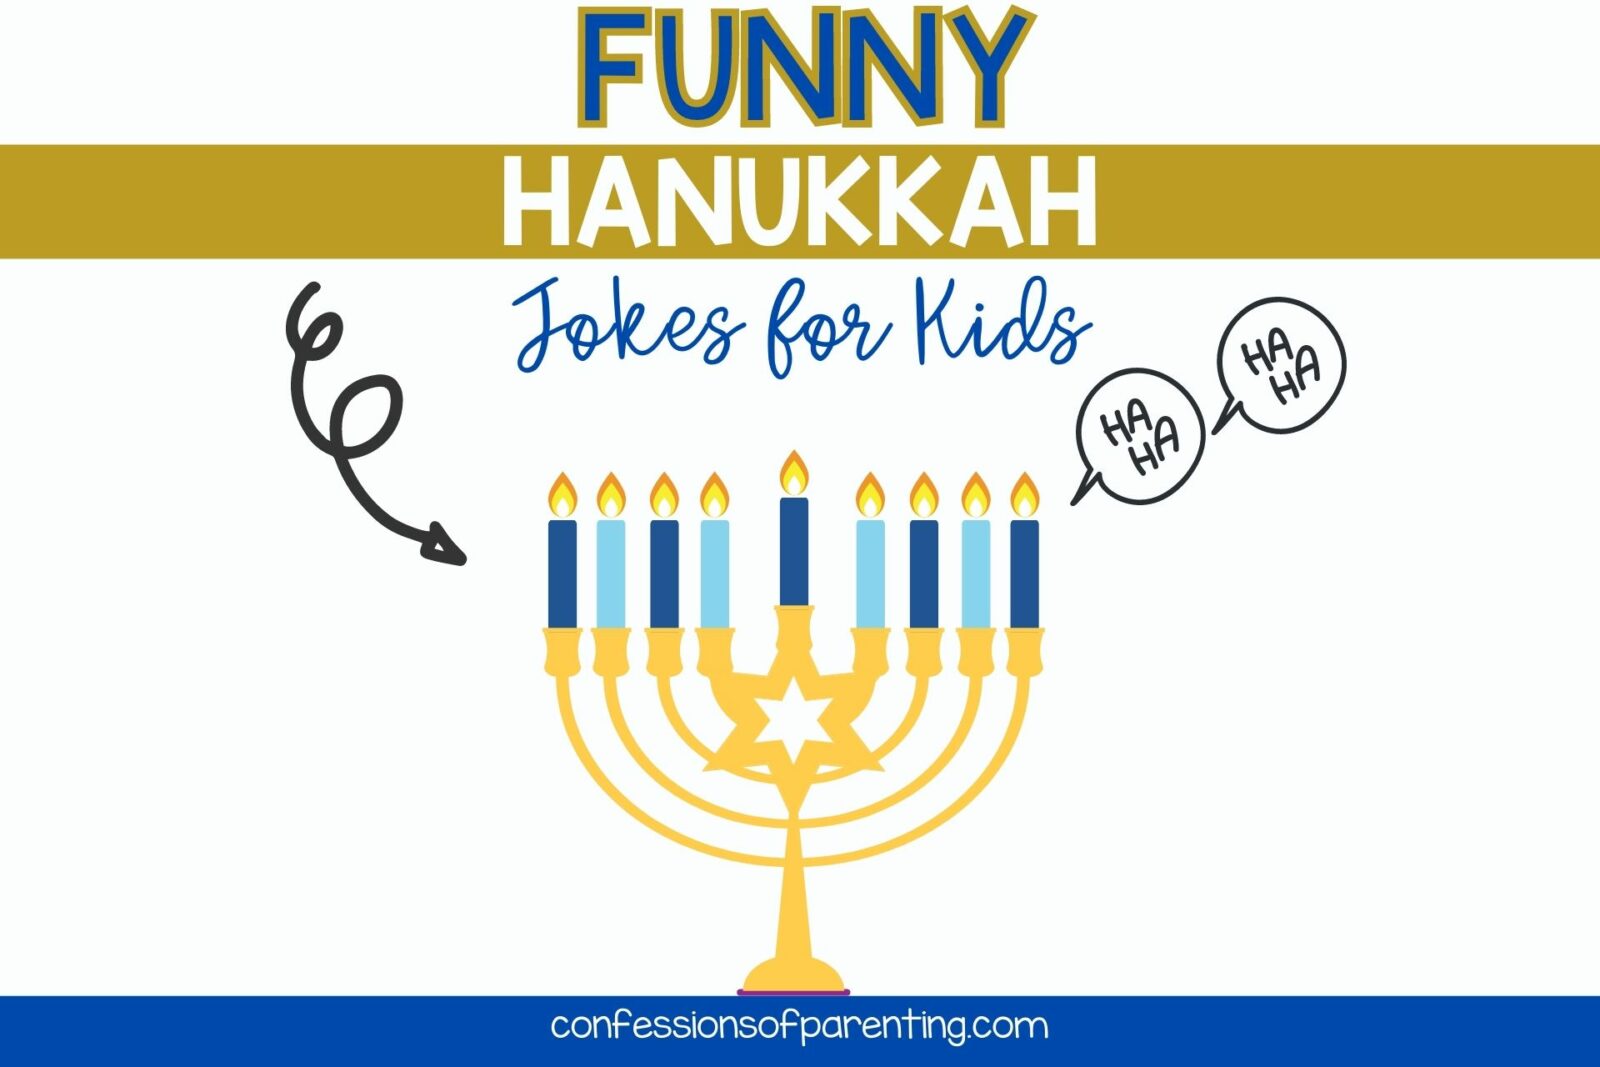 hanukkah jokes for kids